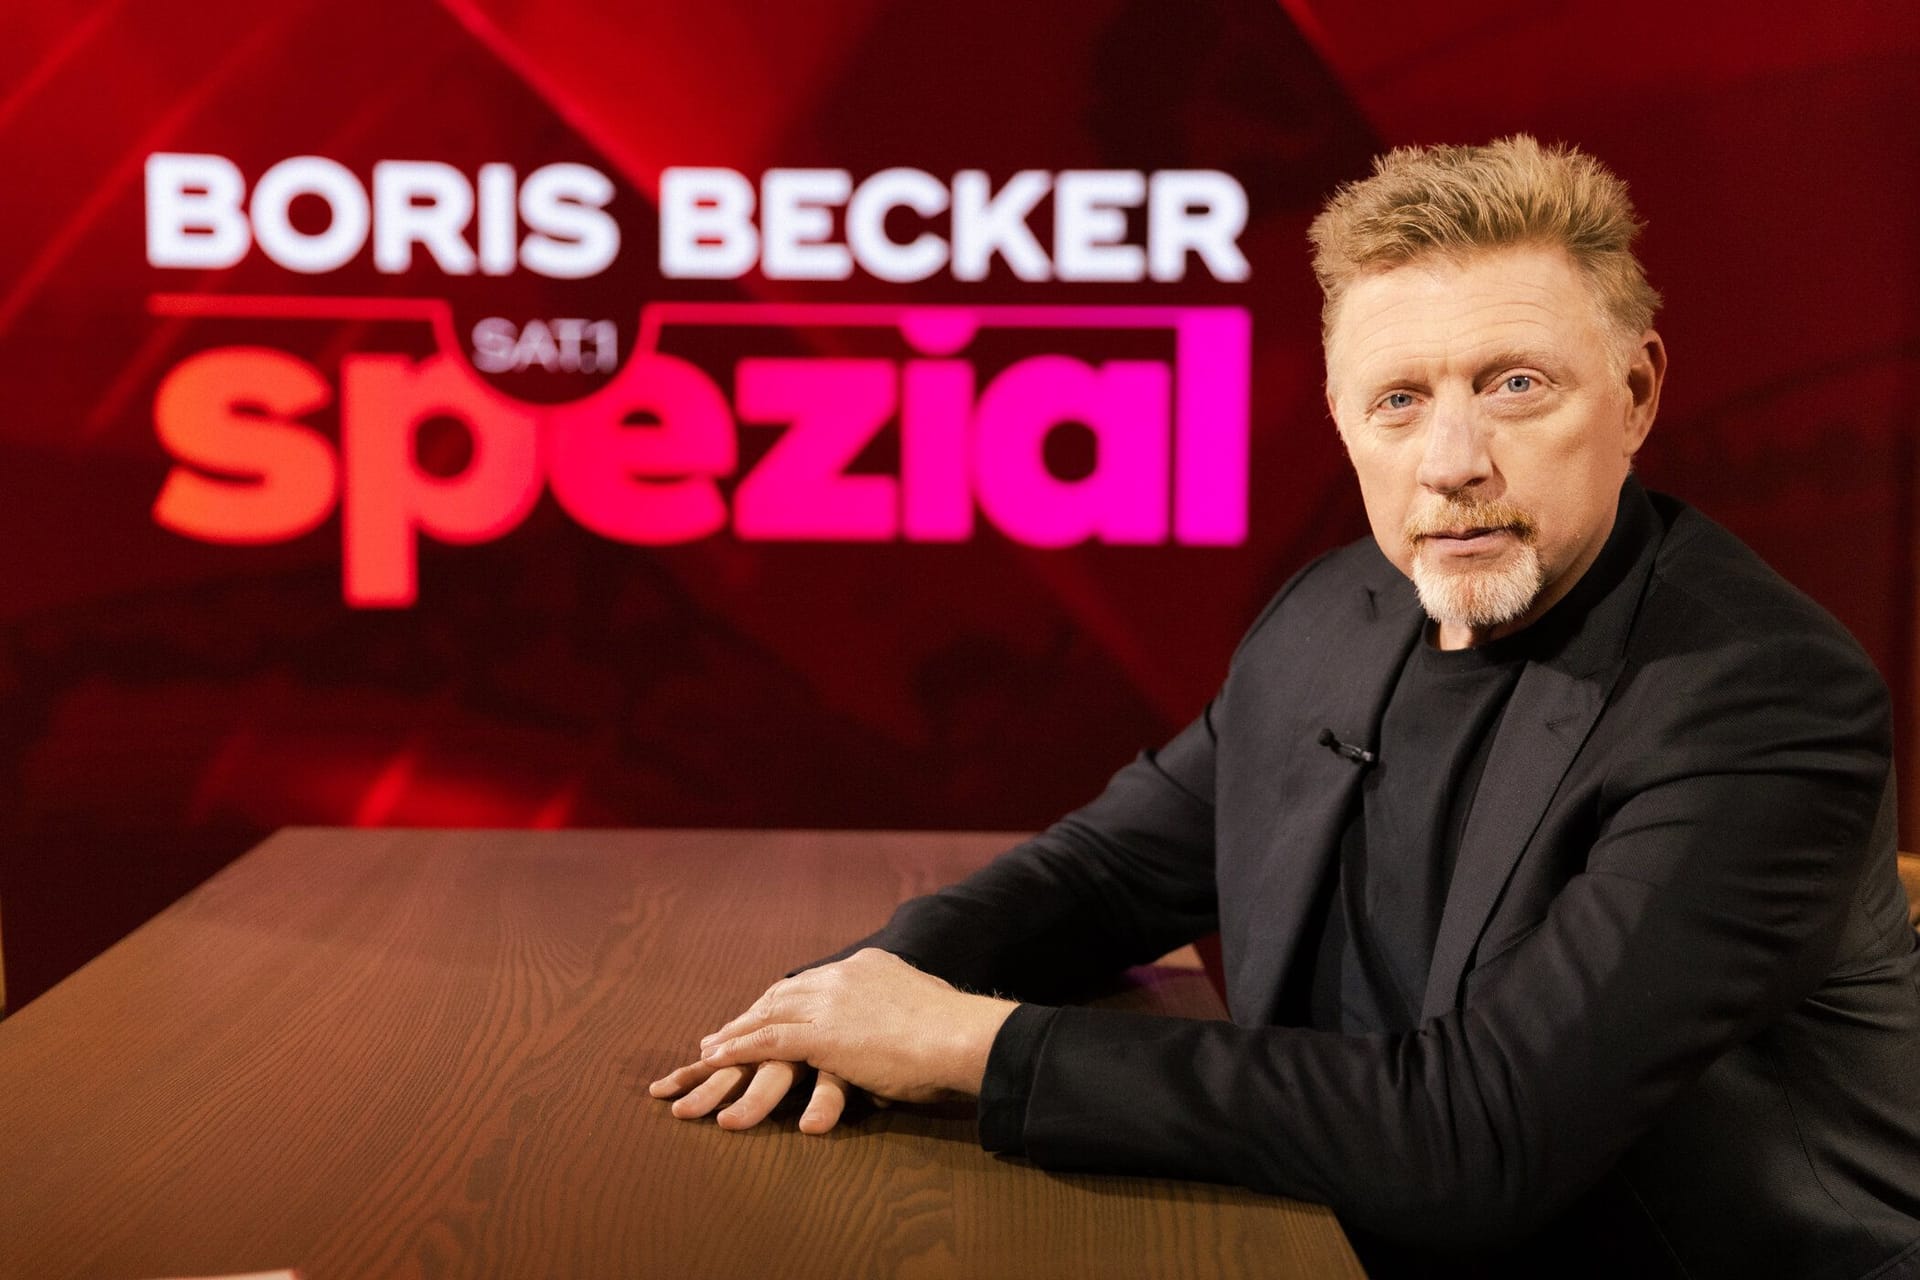 Der neue Boris Becker? Sein Interview schreibt Fernsehgeschichte.